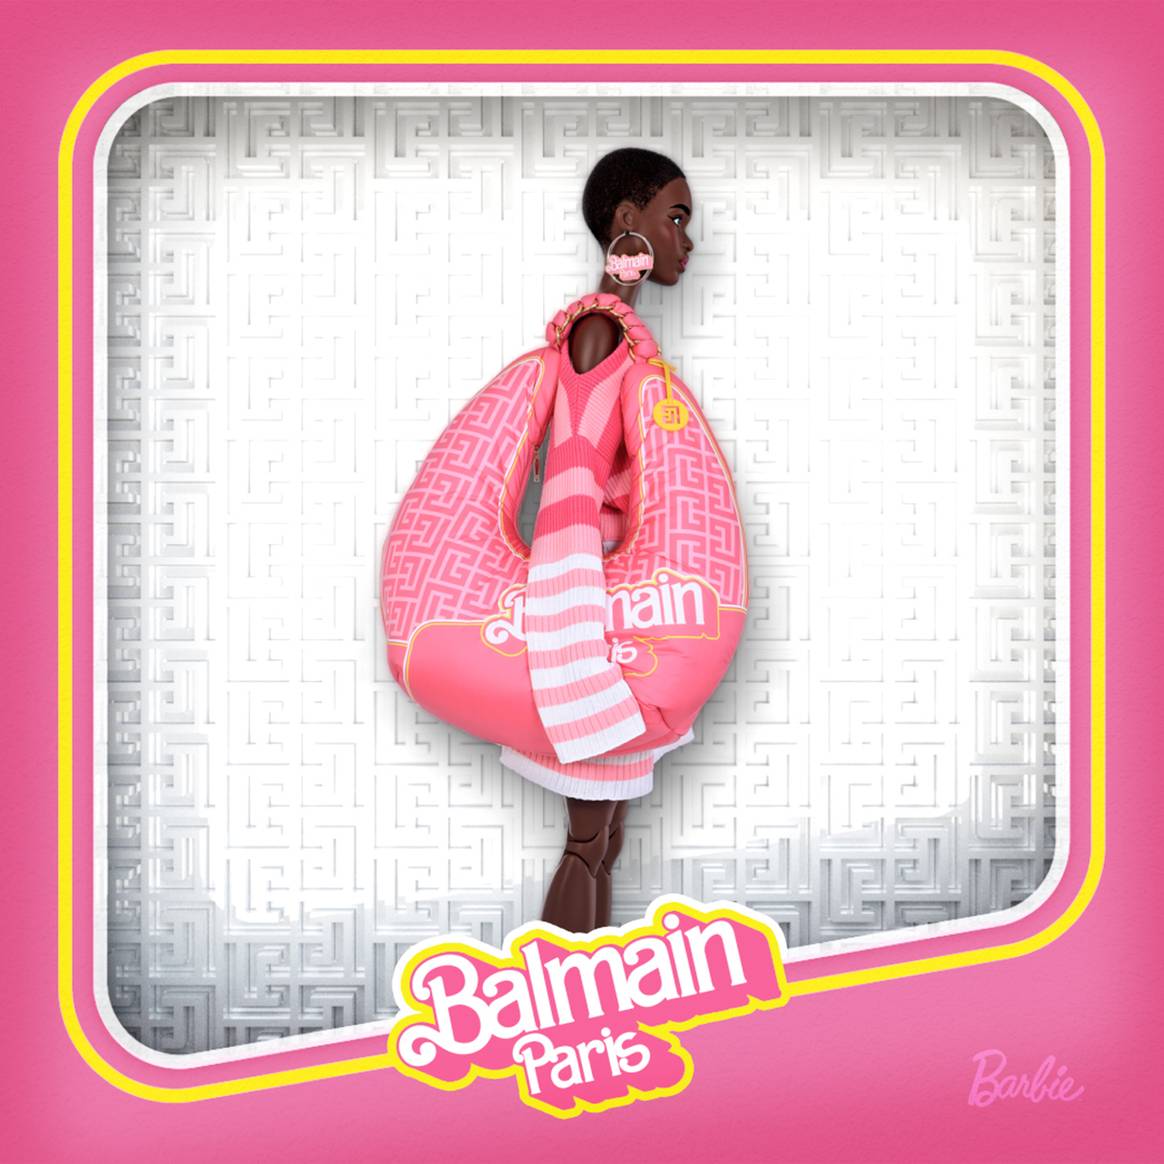 Photo Credits: Barbie x Balmain, colección phygital de prendas ready-to-wear, accesorios y activos NFT. Fotografía de cortesía.